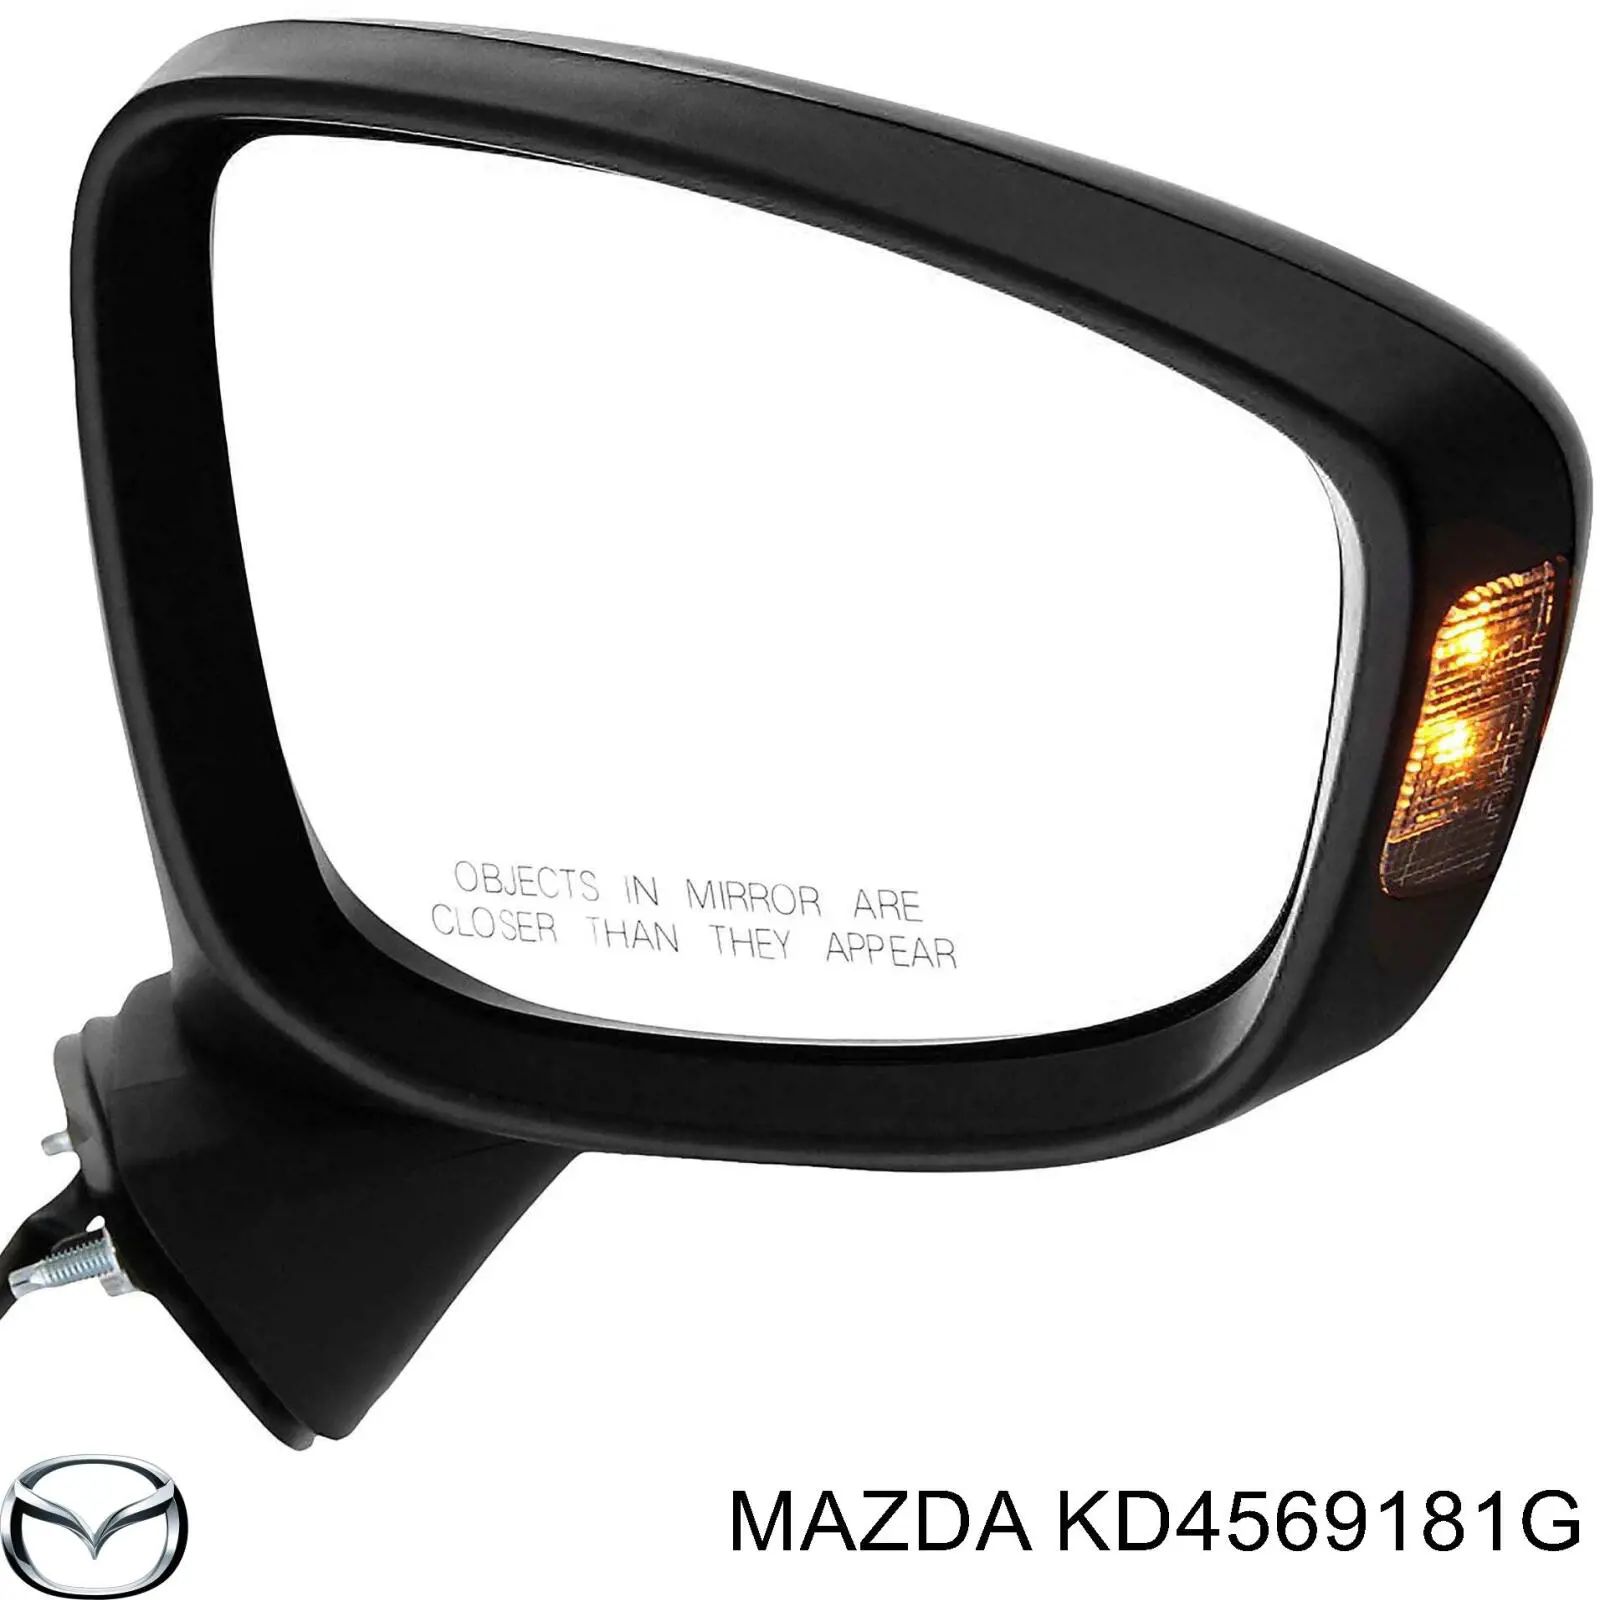 KD5369181L Mazda espejo retrovisor izquierdo